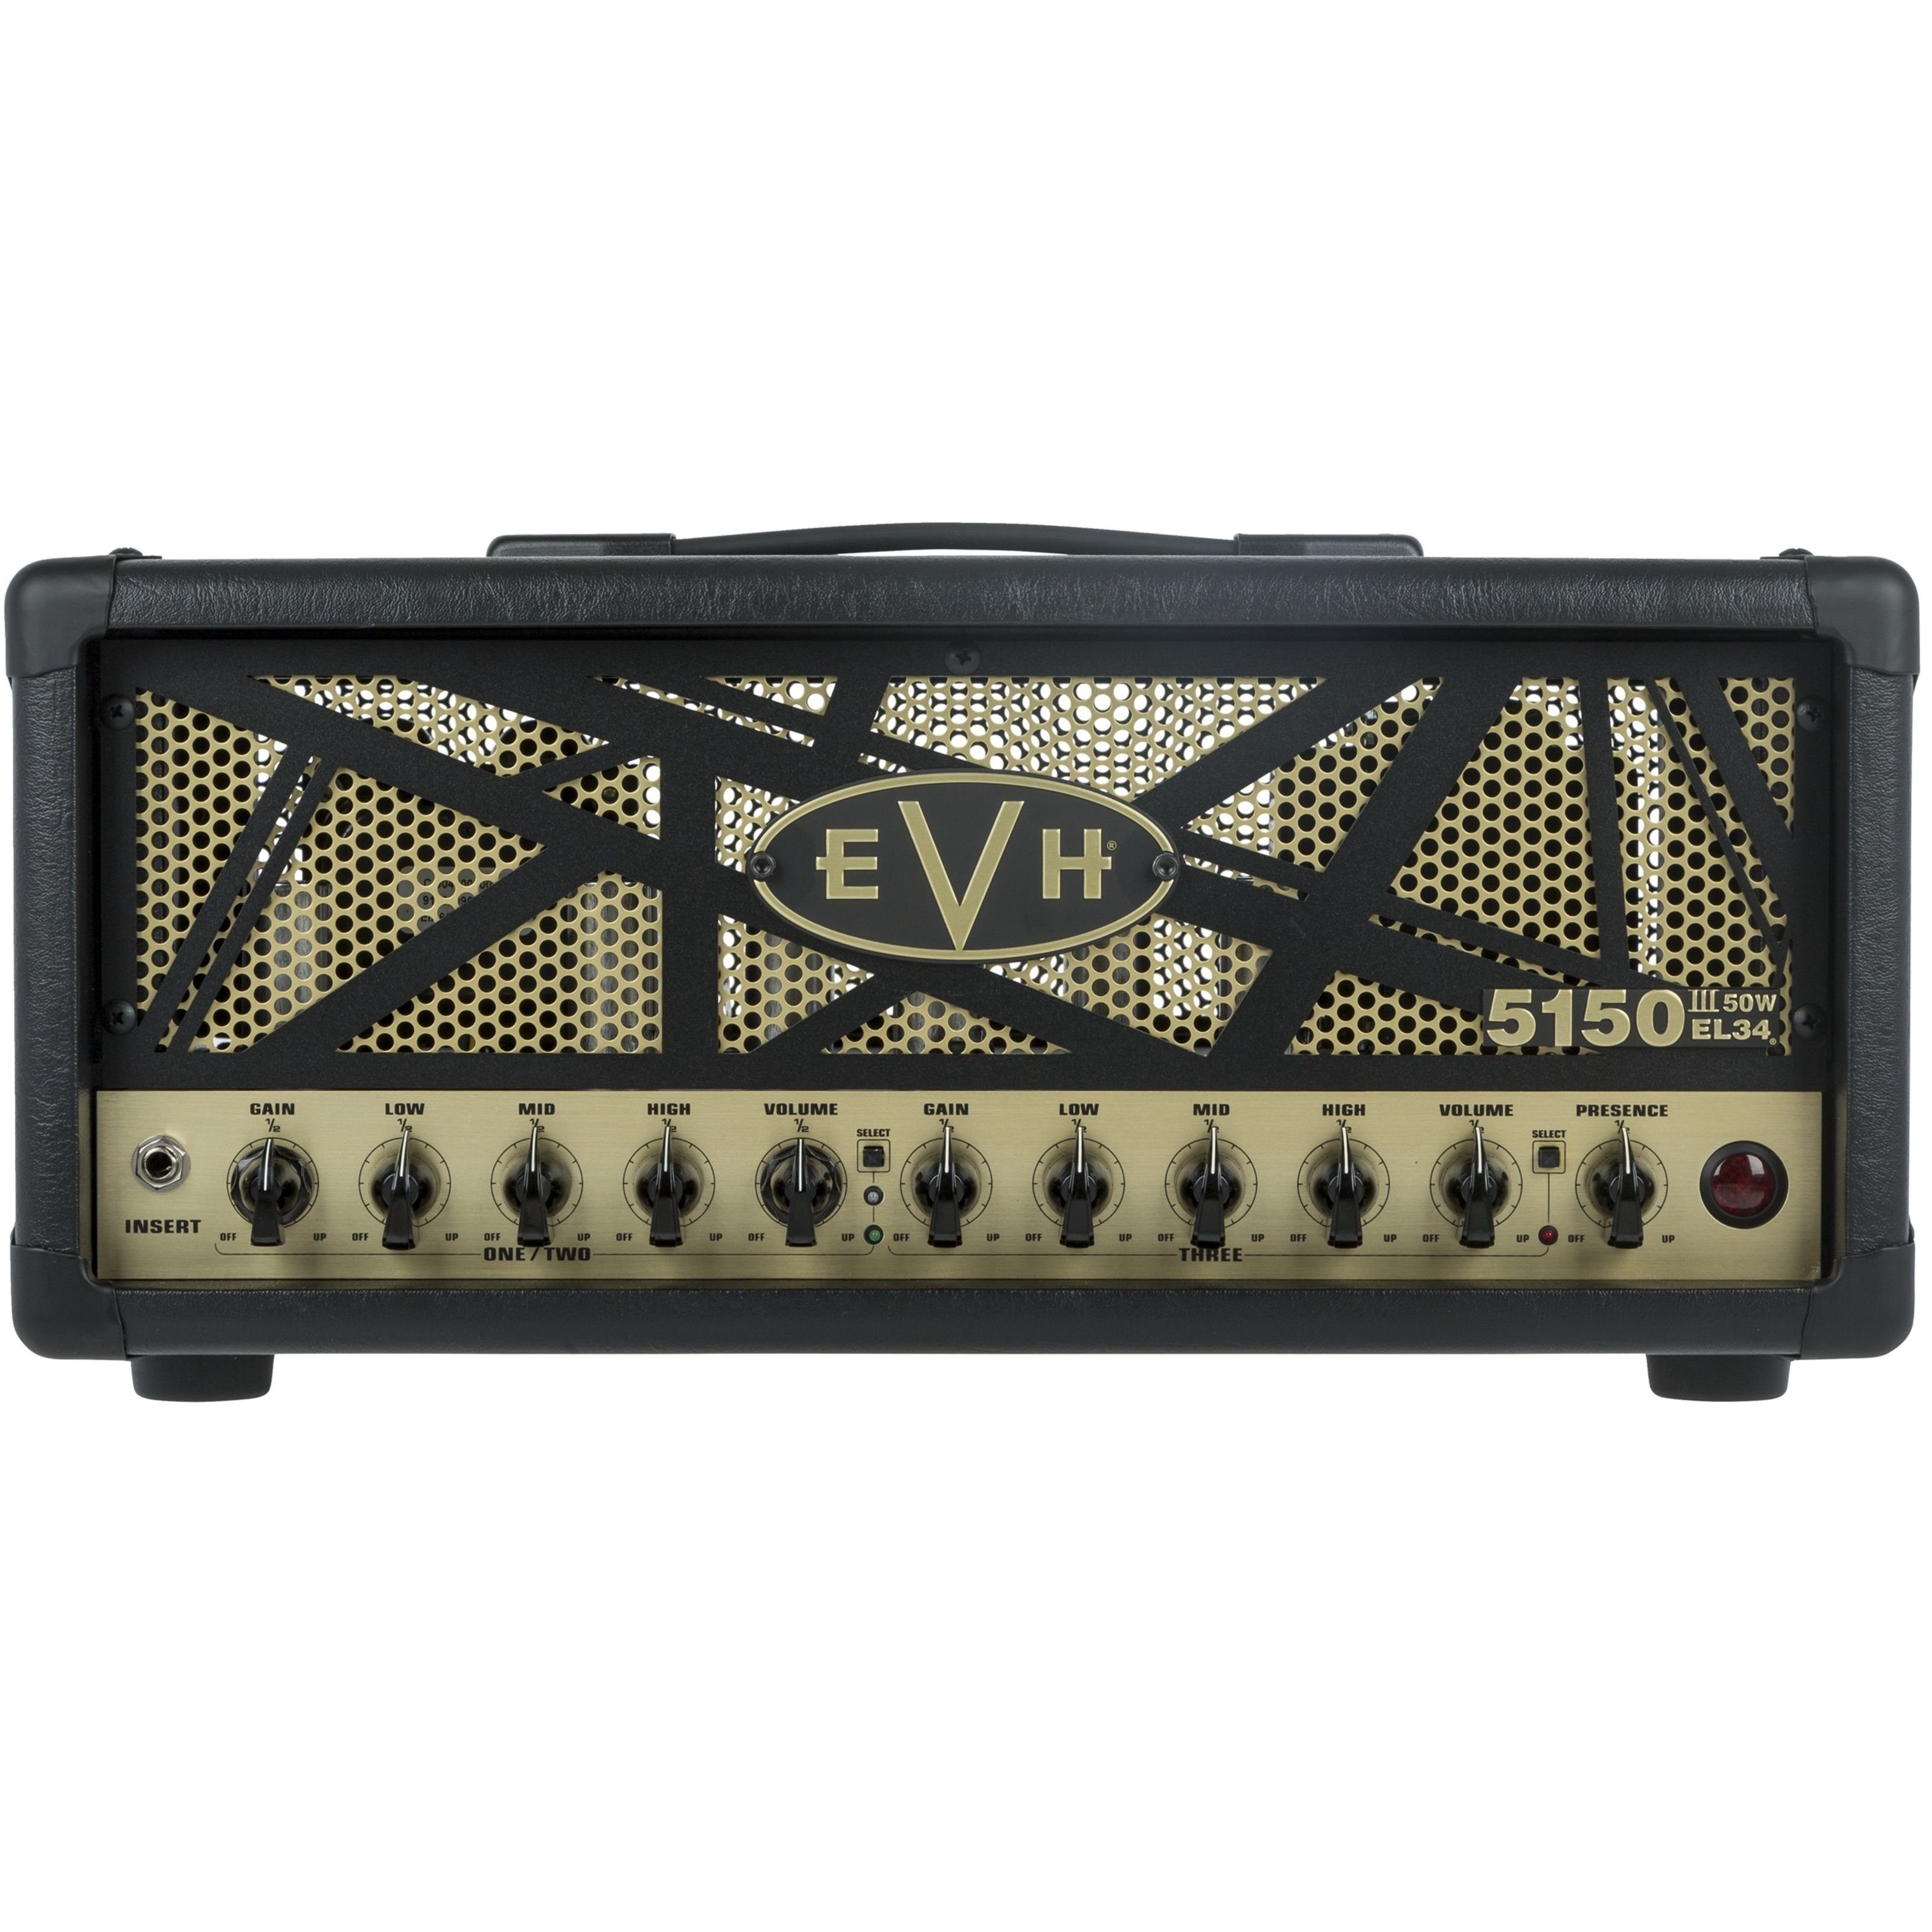 EVH Verstärker (5150III 50W EL34 Head - Röhren Topteil für E-Gitarre)